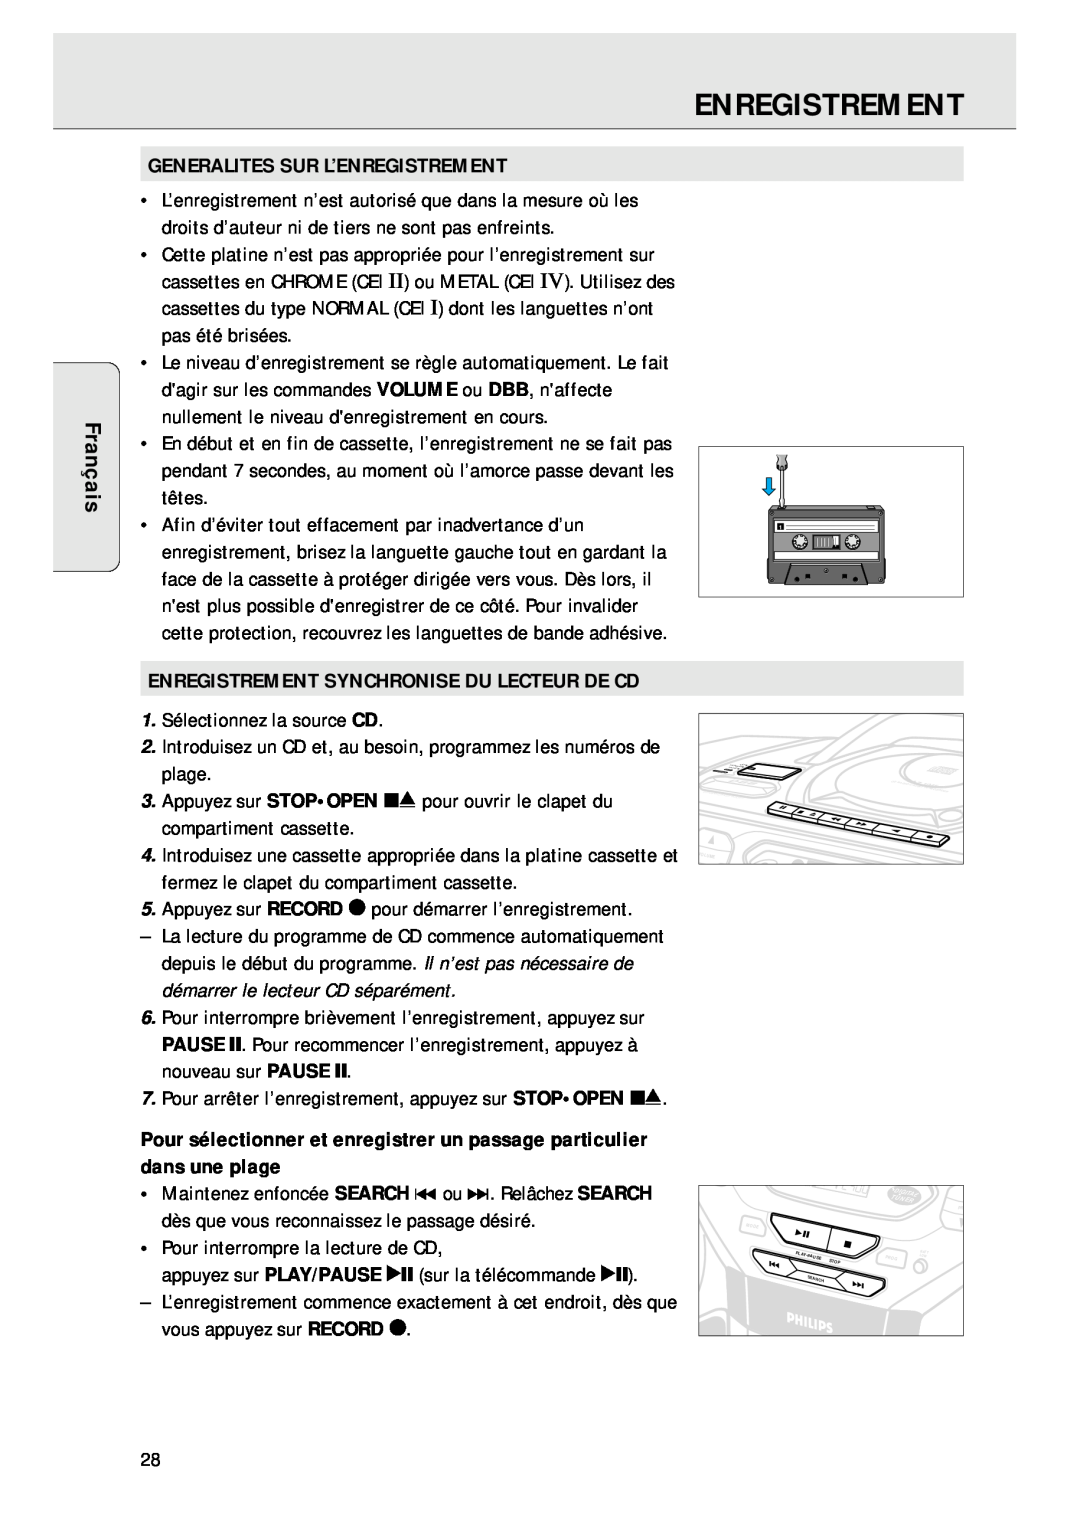 Magnavox AZ 1045 manual Français, Generalites Sur L’Enregistrement, Enregistrement Synchronise Du Lecteur De Cd 